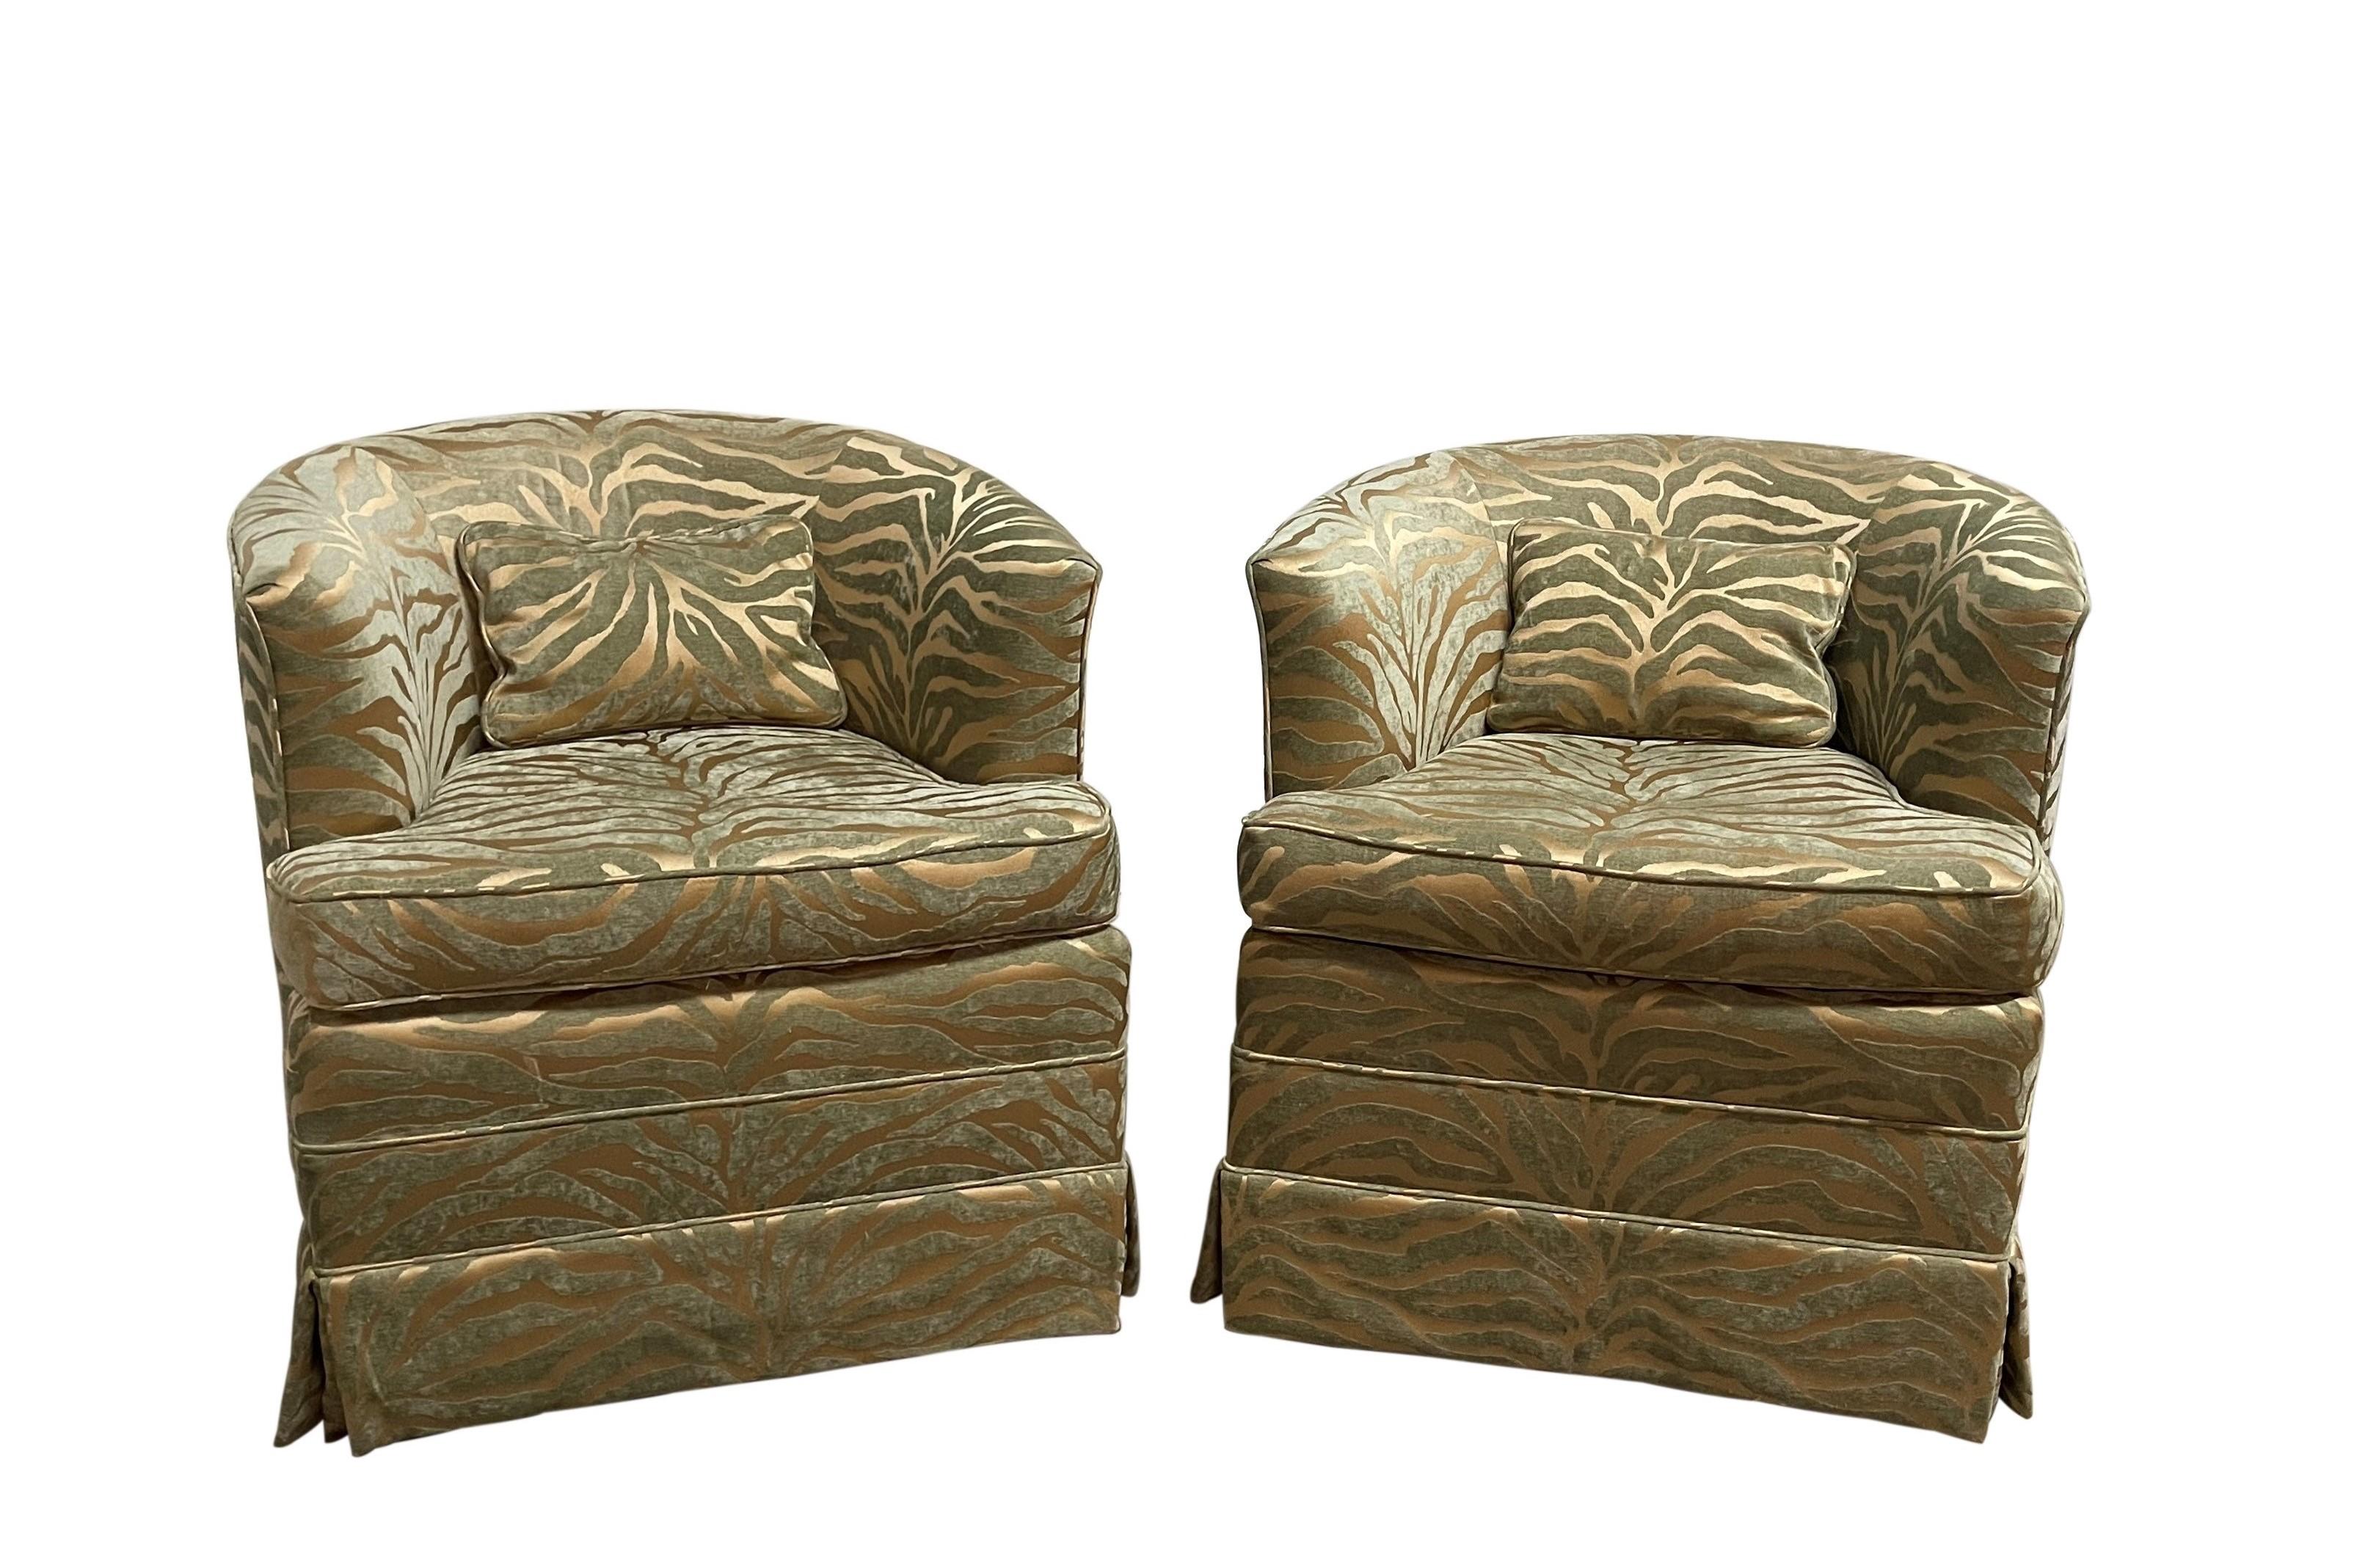 Deux fabuleuses chaises longues à dossier en tonneau de style Milo Baughman. Fauteuils pivotants modernistes revêtus d'un velours à relief audacieux, d'une brillance étonnante et luxueuse. Une jupe recouvre une base métallique à quatre pieds avec un